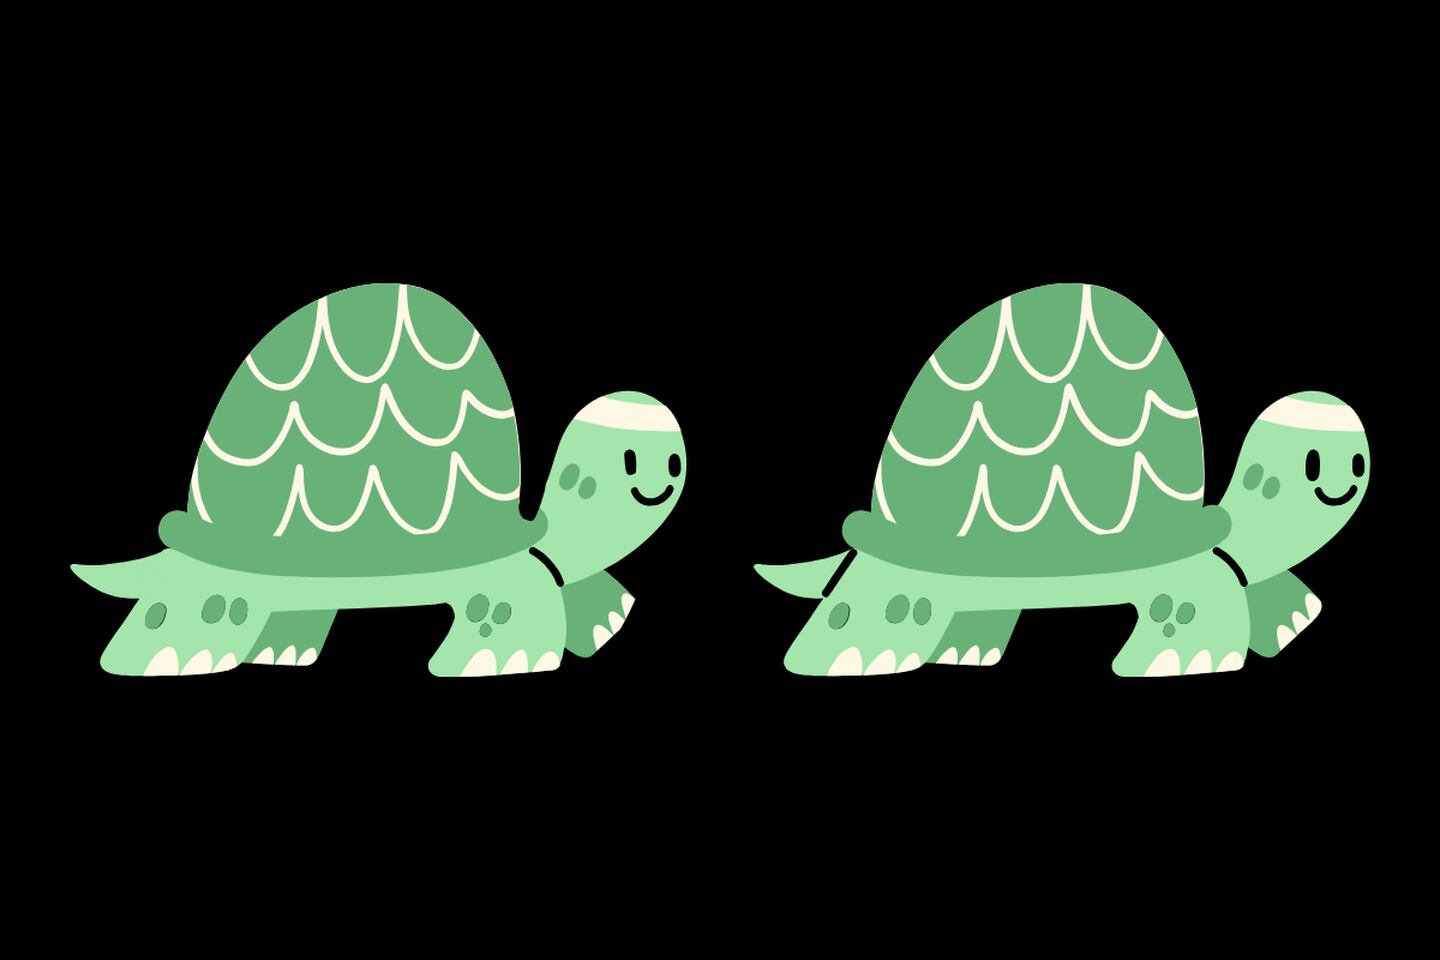 En este test visual se ven dos tortugas que parecen iguales, pero tienen 4 diferencias entre ellas.